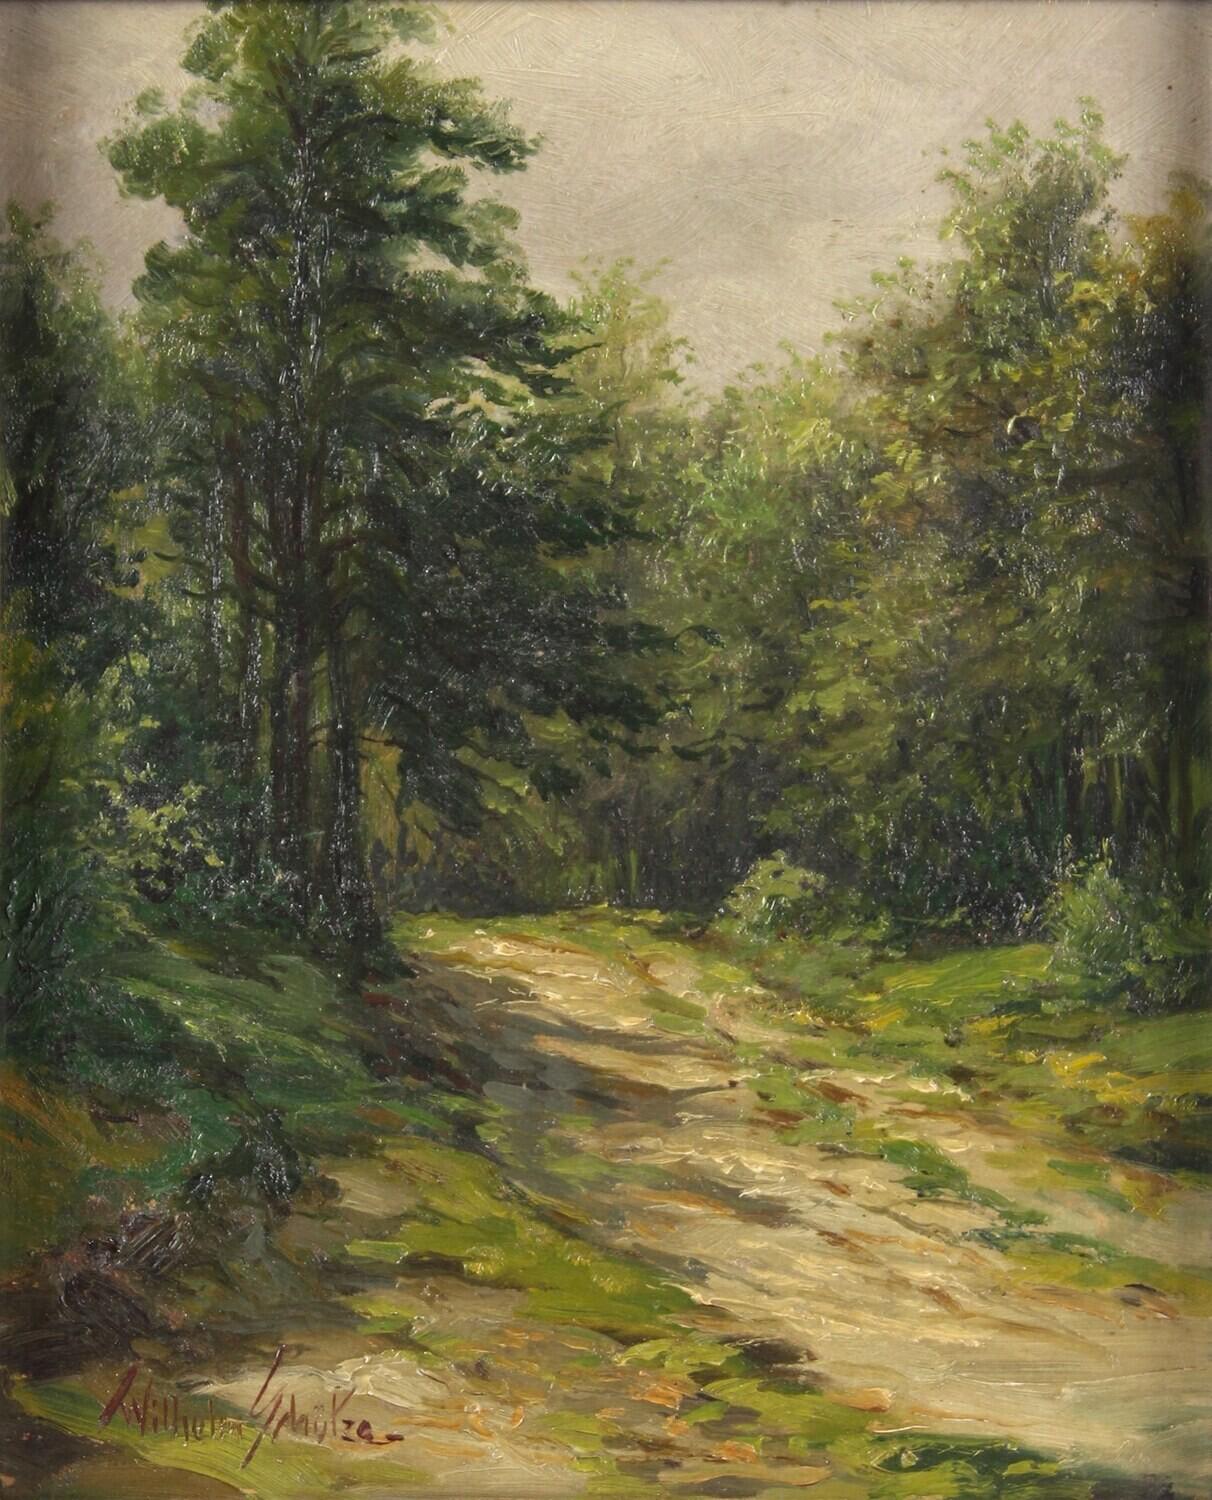 Chemin de bois ensoleillé - Un chemin de forêt aux couleurs vives comme un espace d'imagination -